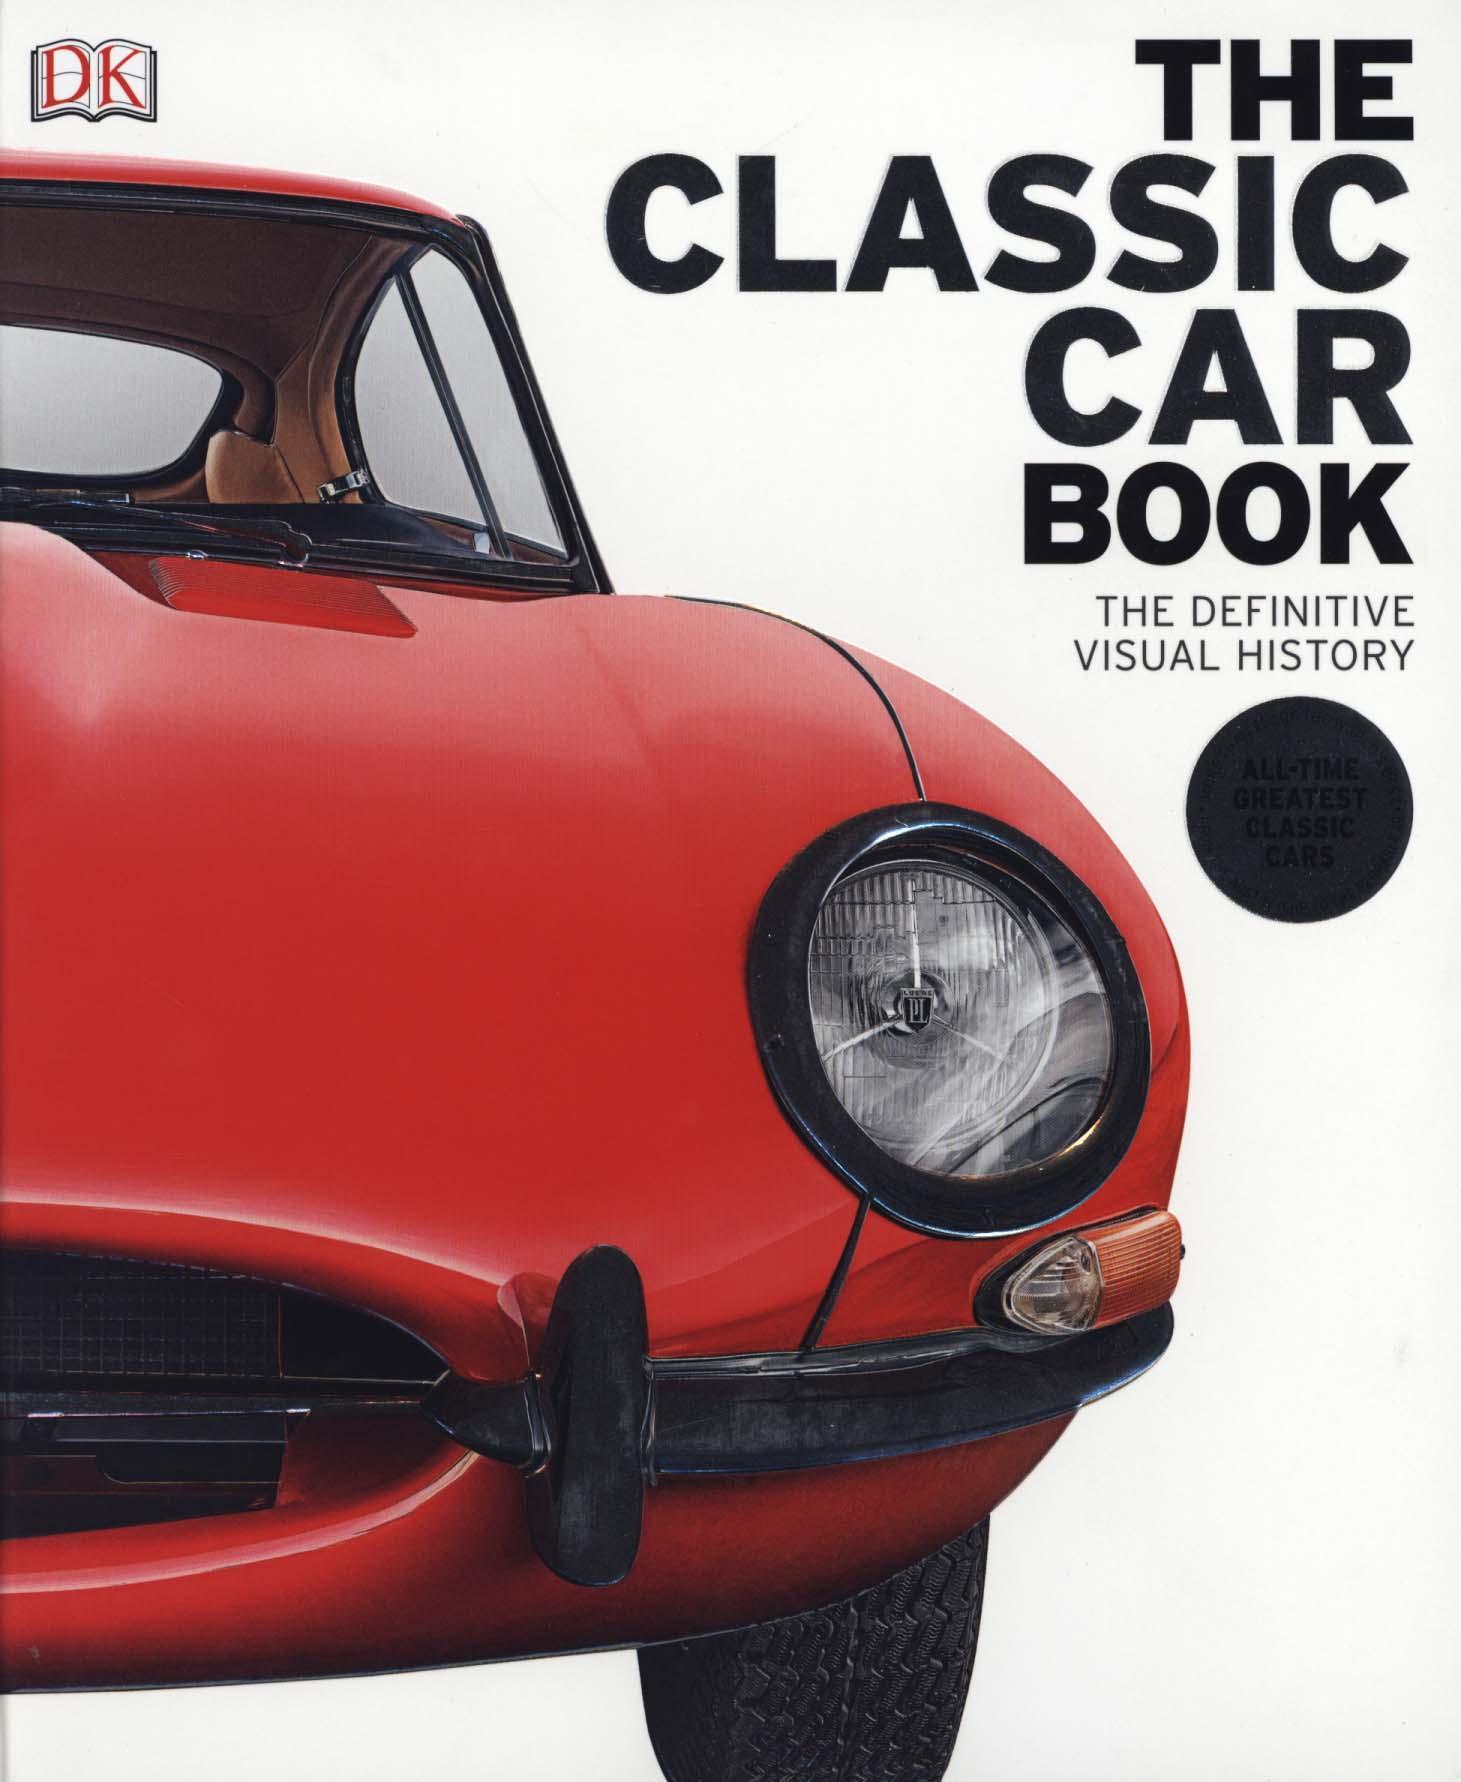 Classic Car Book -  DK